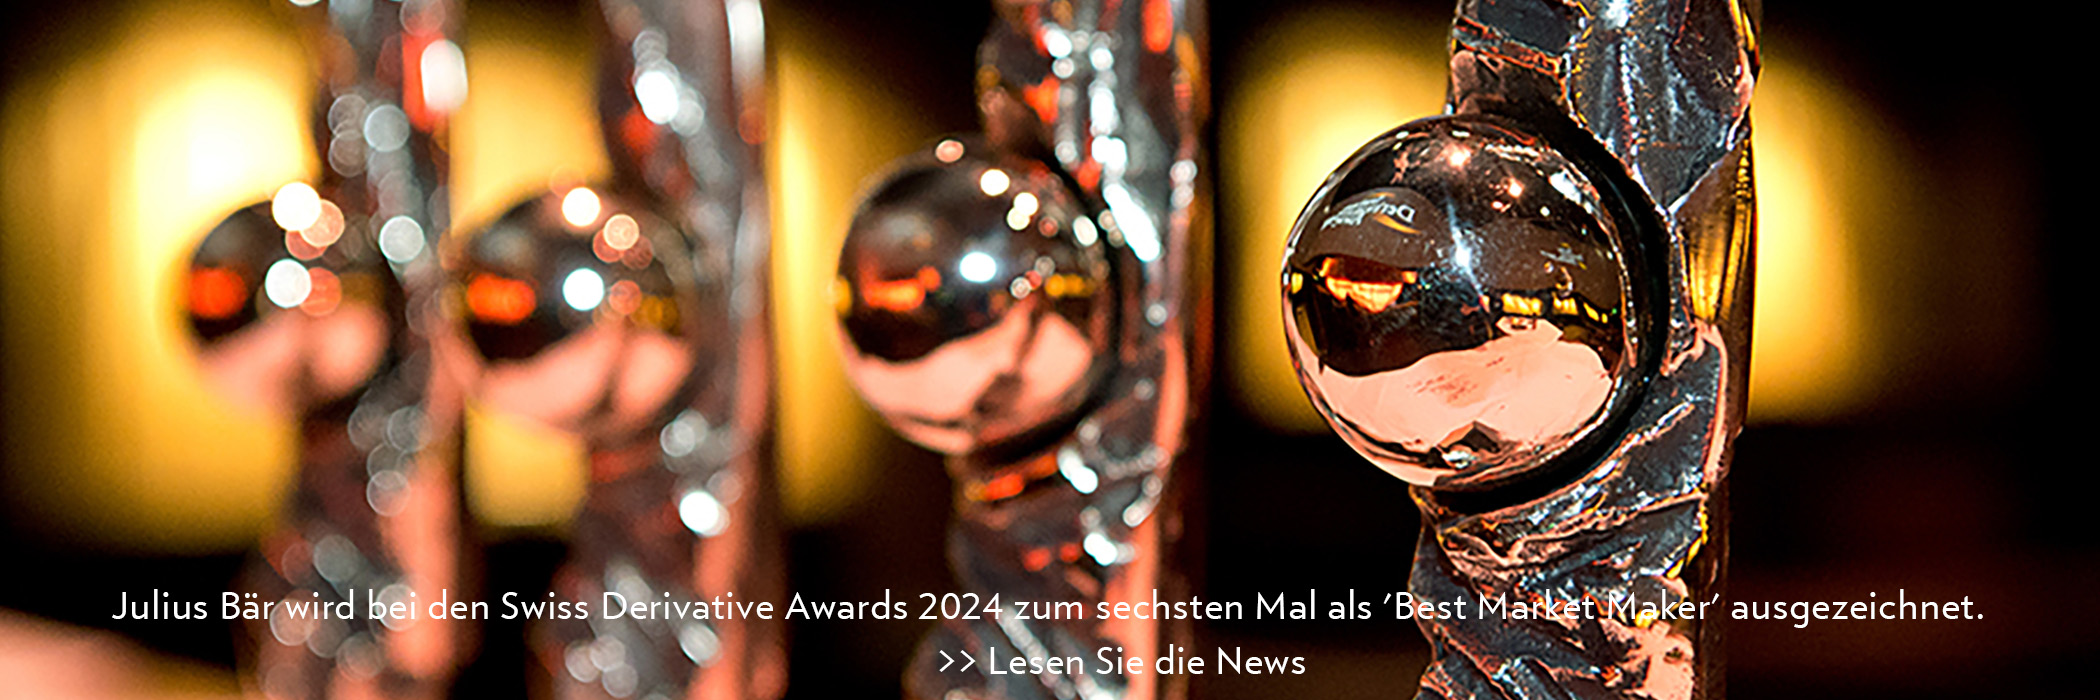 Julius Bär wird bei den Swiss Derivative Awards 2024 zum sechsten Mal als 'Best Market Maker' ausgezeichnet.